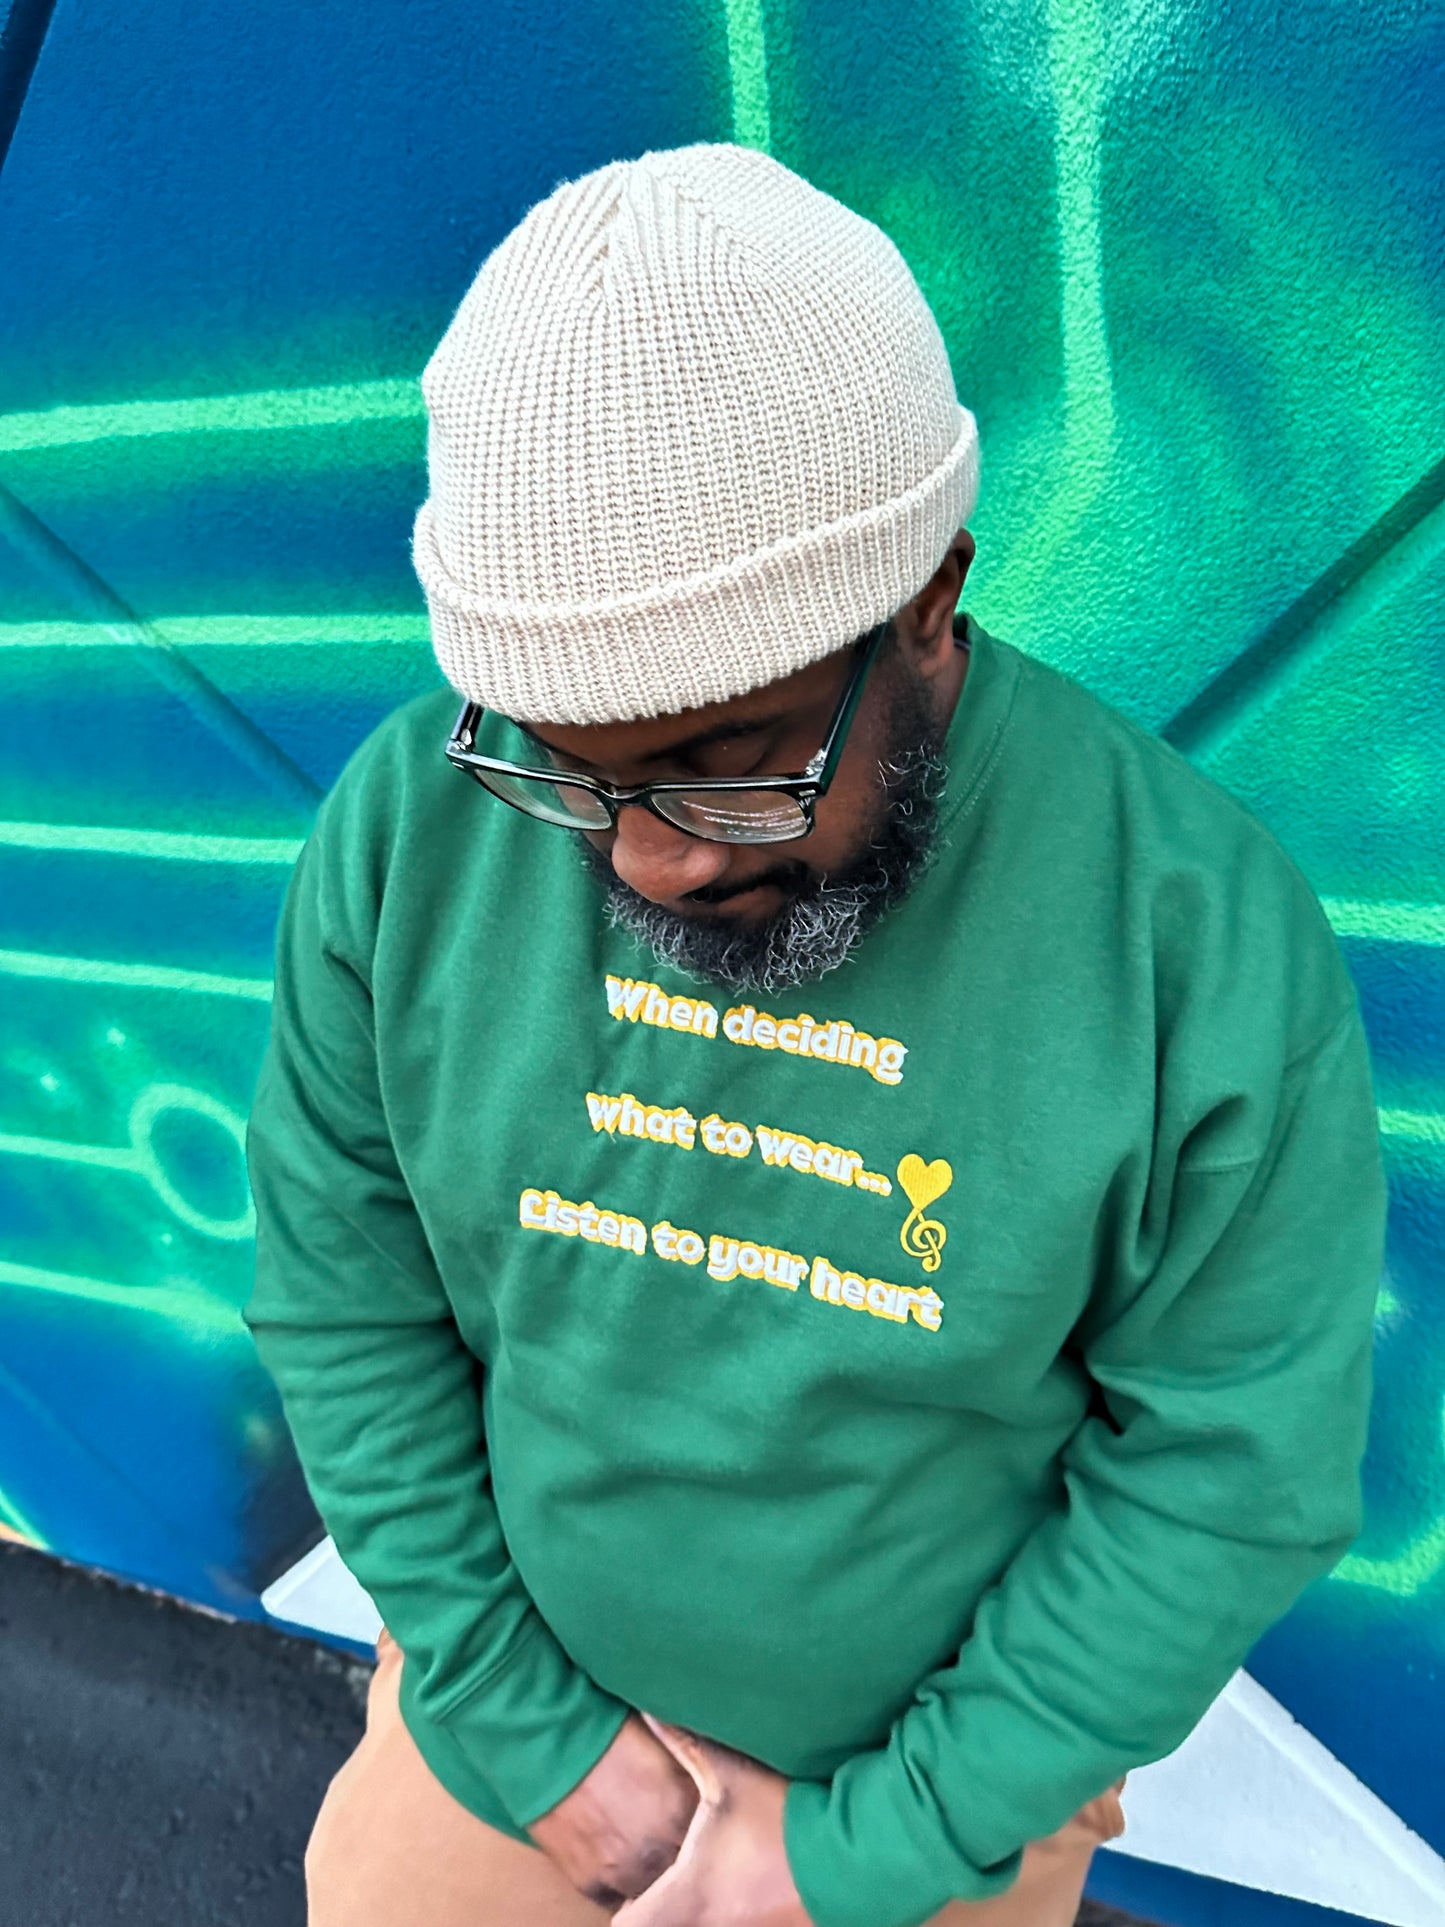 Forest Green Slogan Premium Sweatshirt